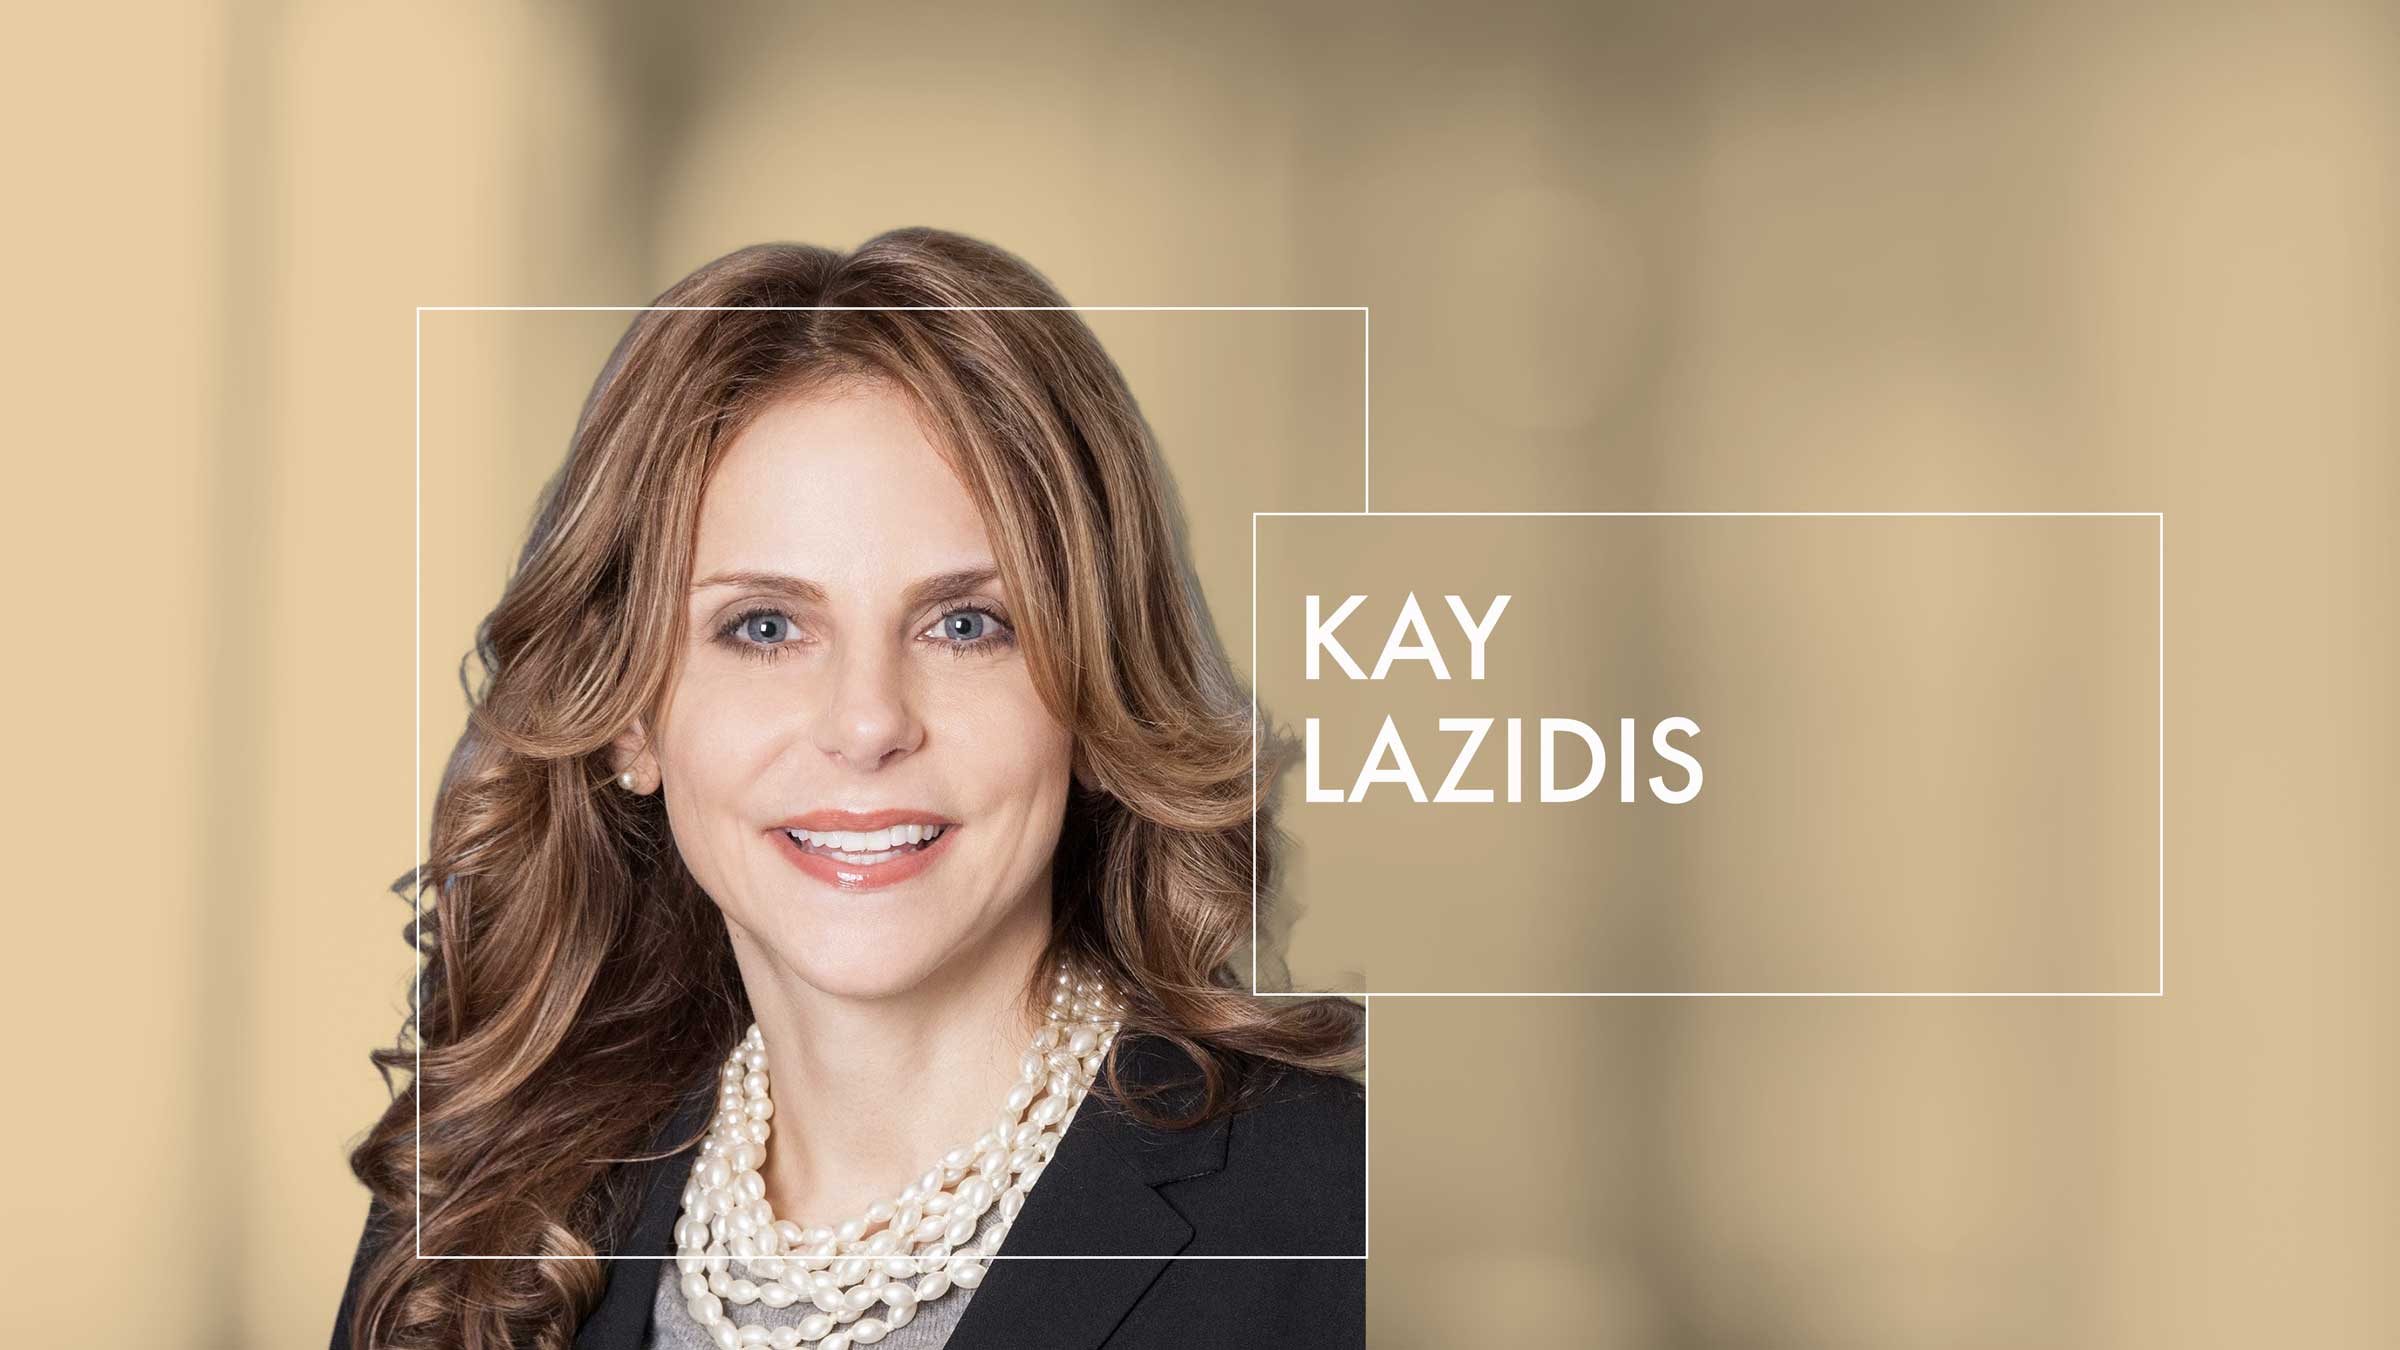 Kay Lazidis